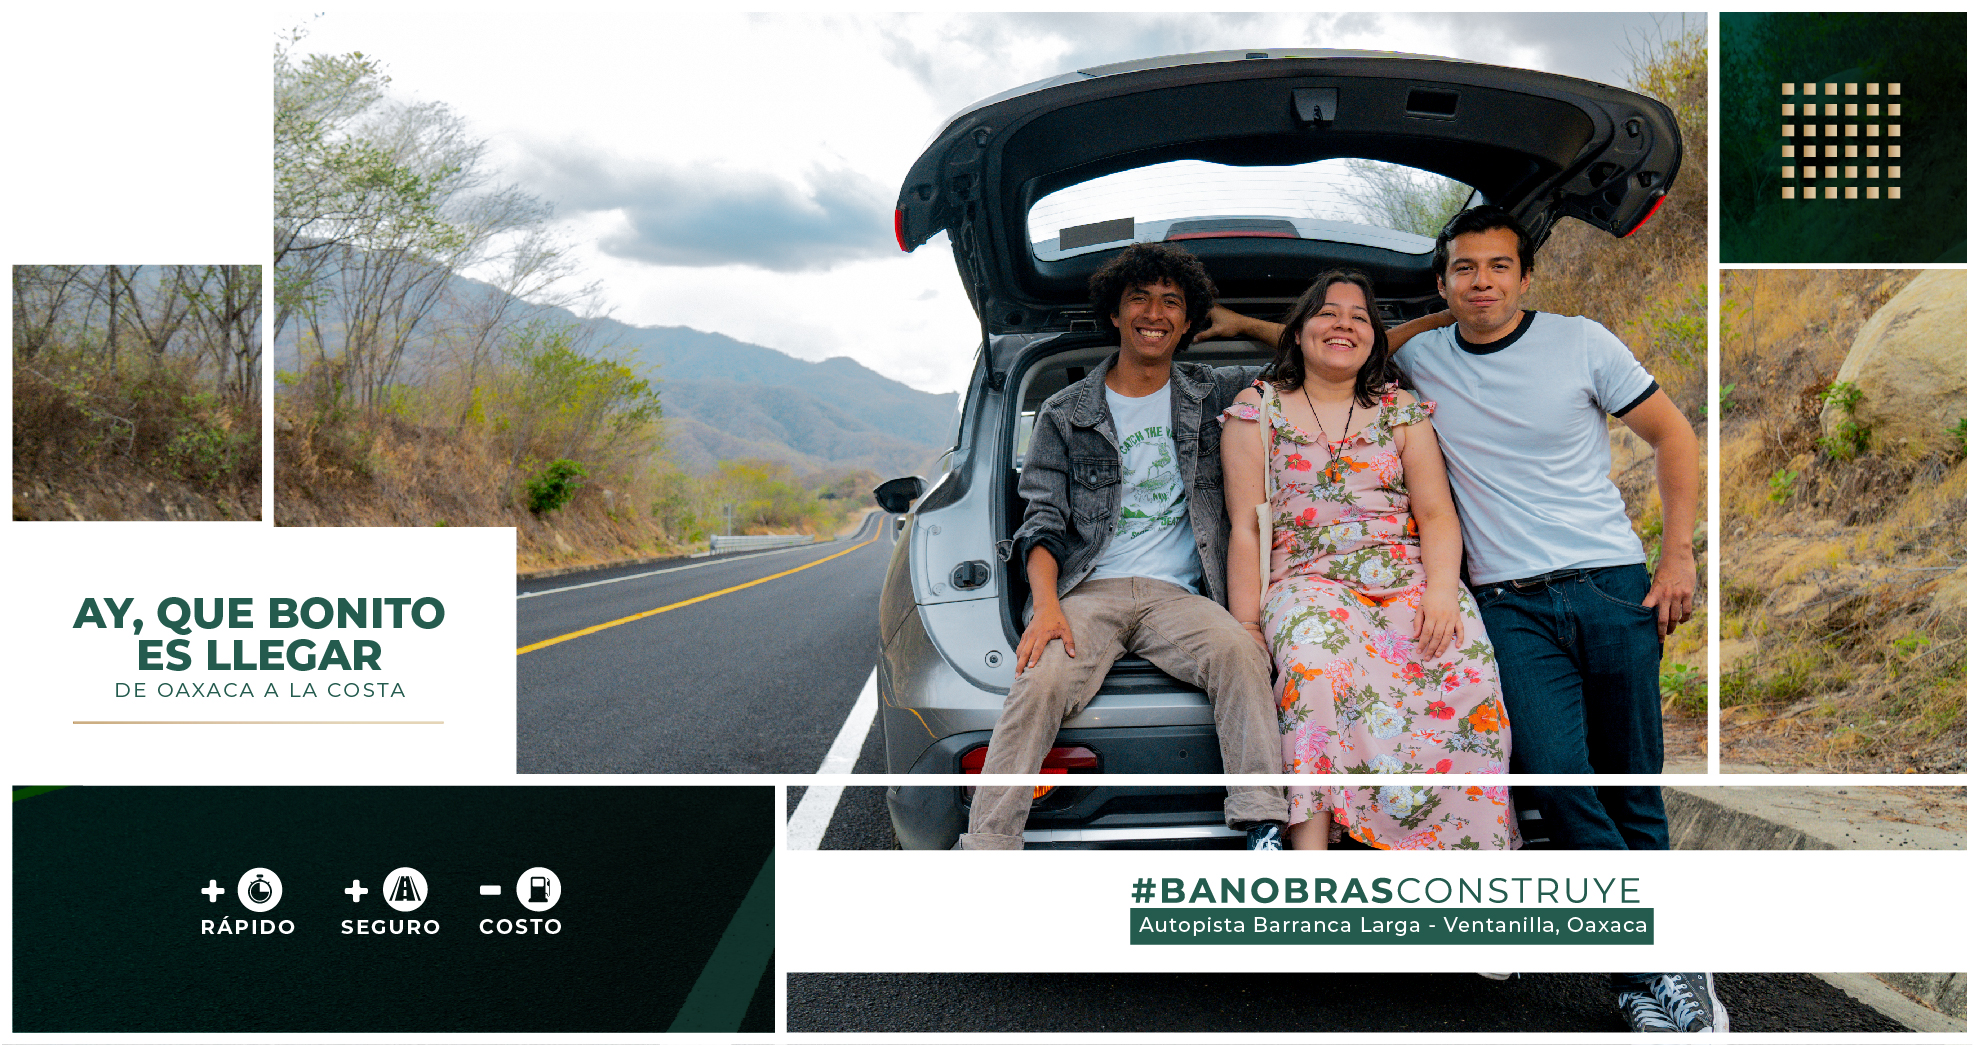 La autopista se puso en operación el pasado 4 de febrero y ya transitan turistas nacionales, extranjeros, proveedores de bienes y servicios de la región, y población de su zona de influencia en Oaxaca.